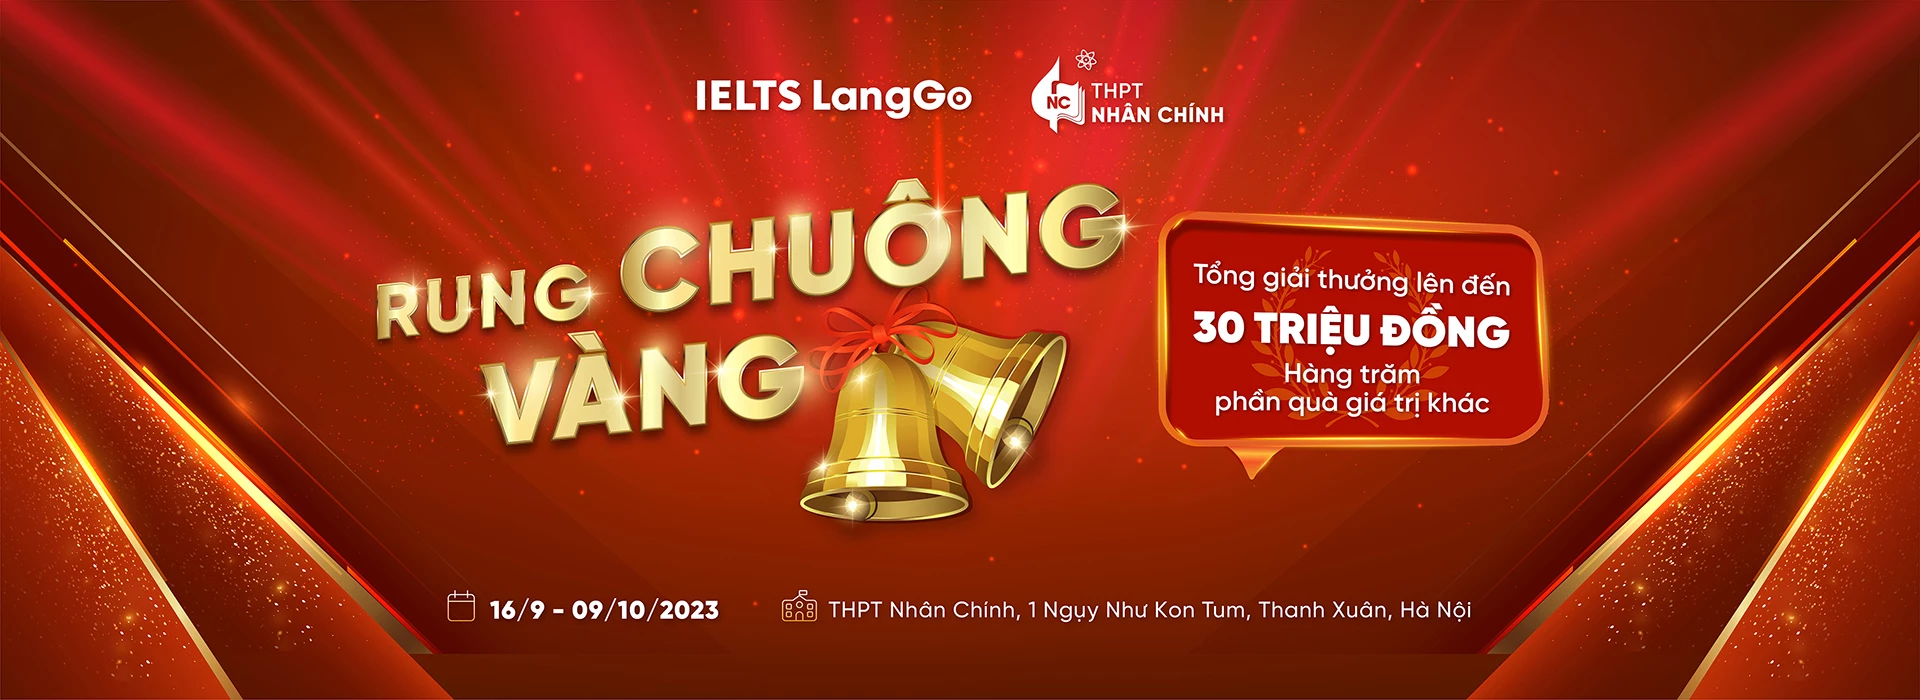 Gameshow trí thức Rung Chuông Vàng sẽ đến với THPT Nhân Chính vào tháng 10